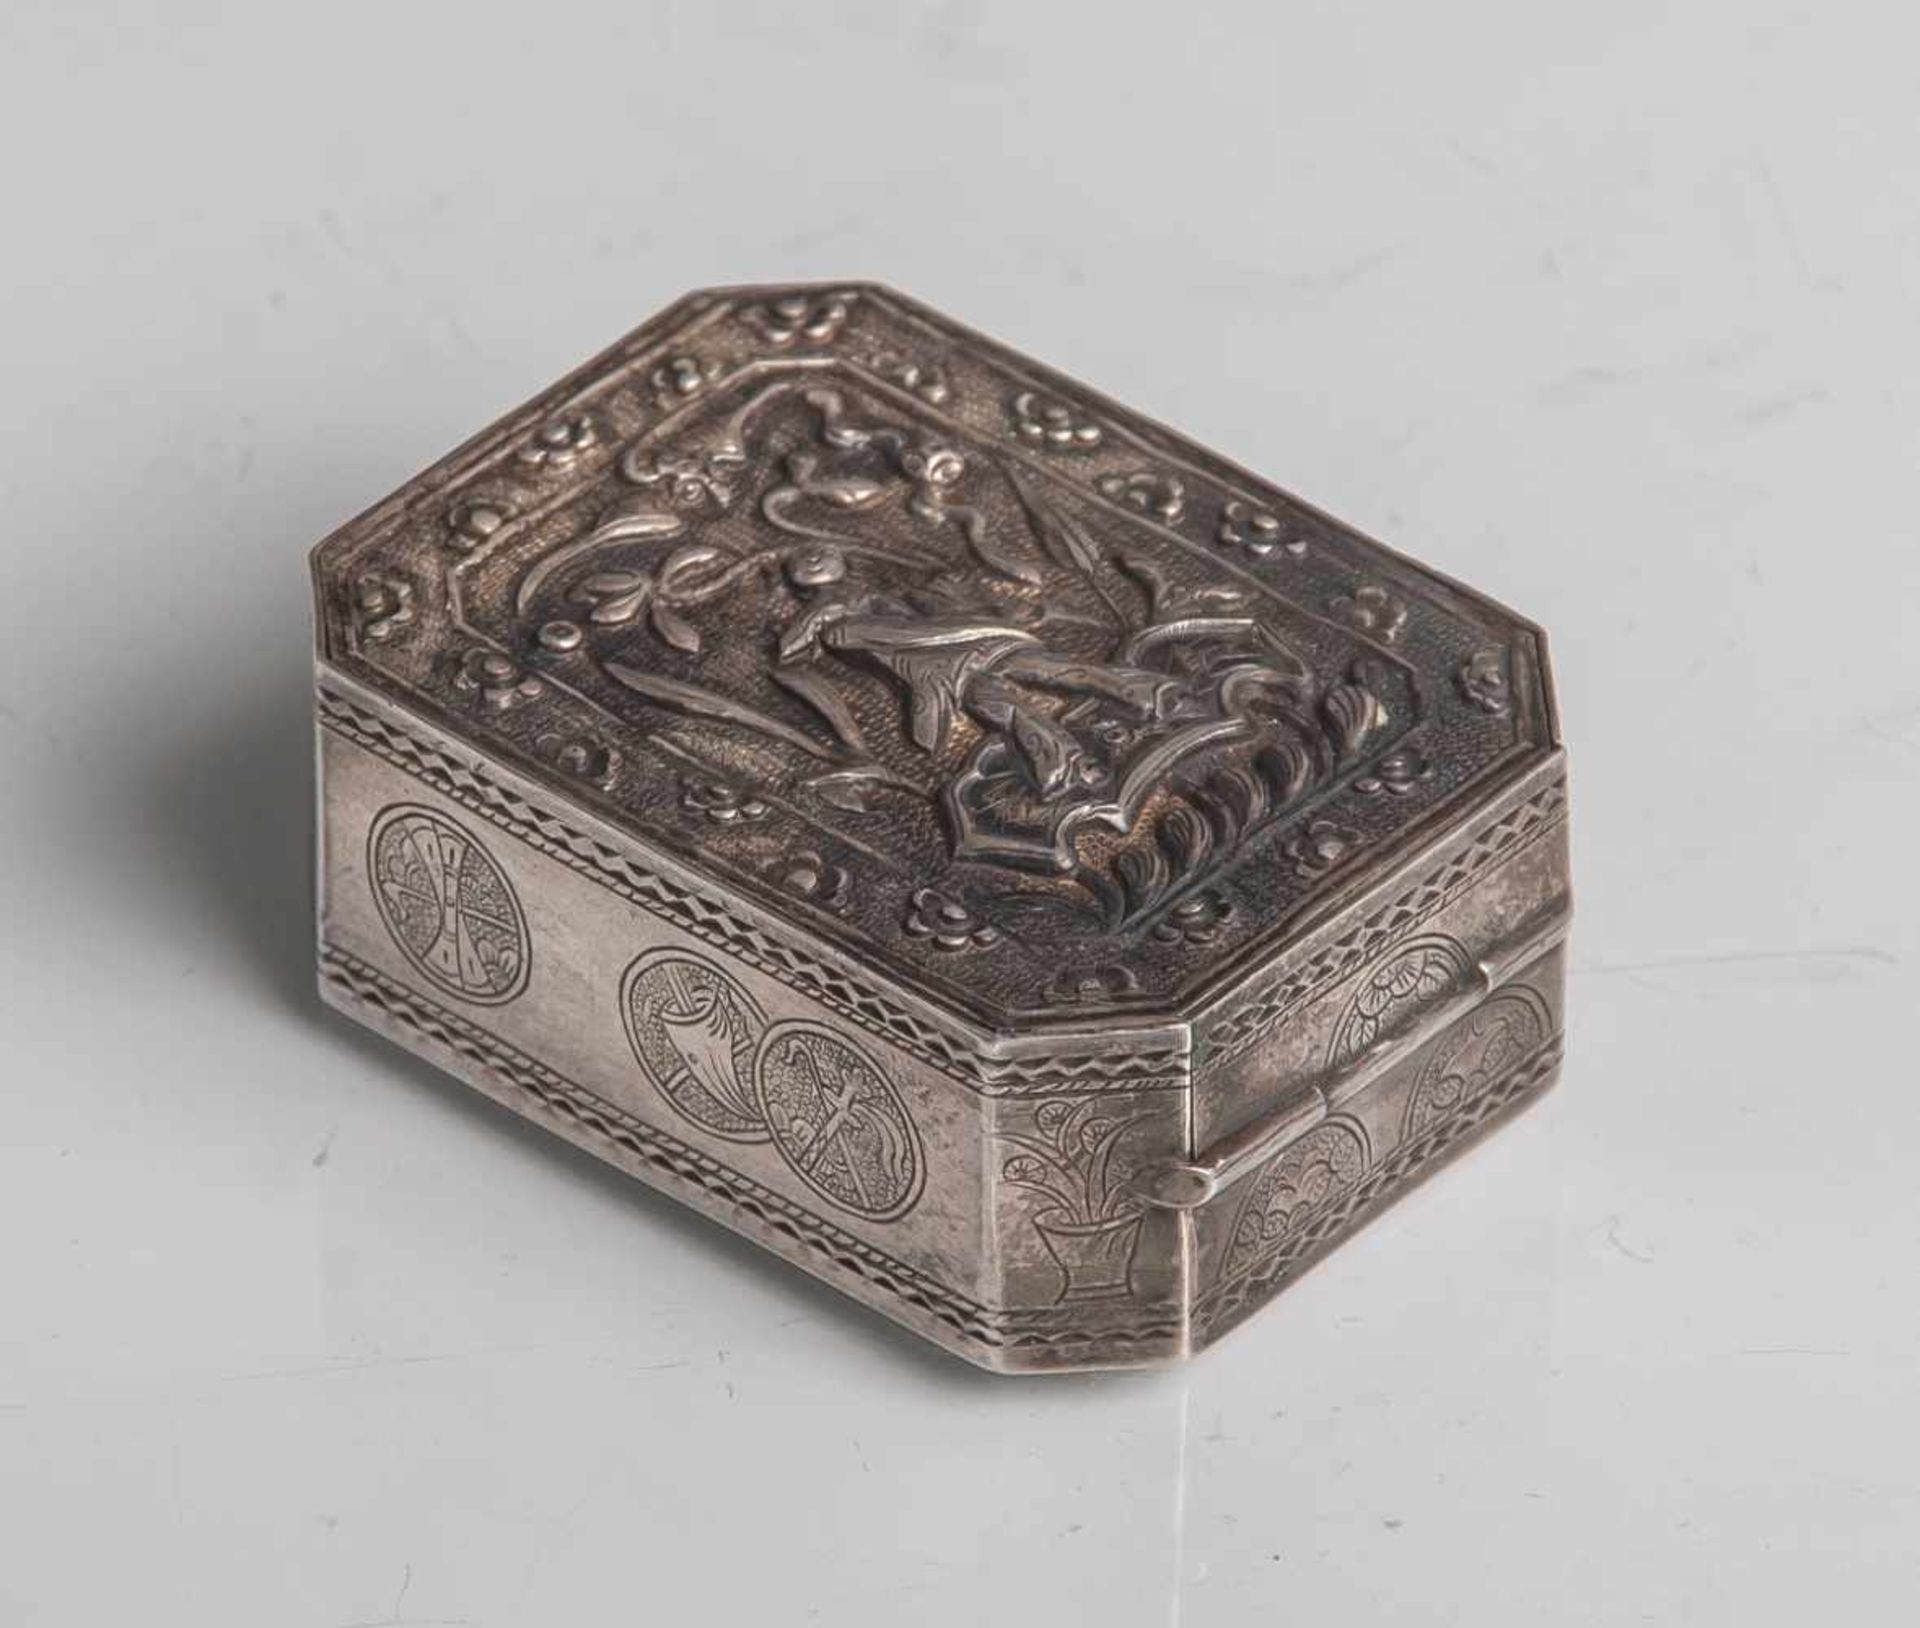 Pillendose (chinesische Marke/Schriftzeichen, wohl um 1900), aus Silber gearbeitet,rechteckige